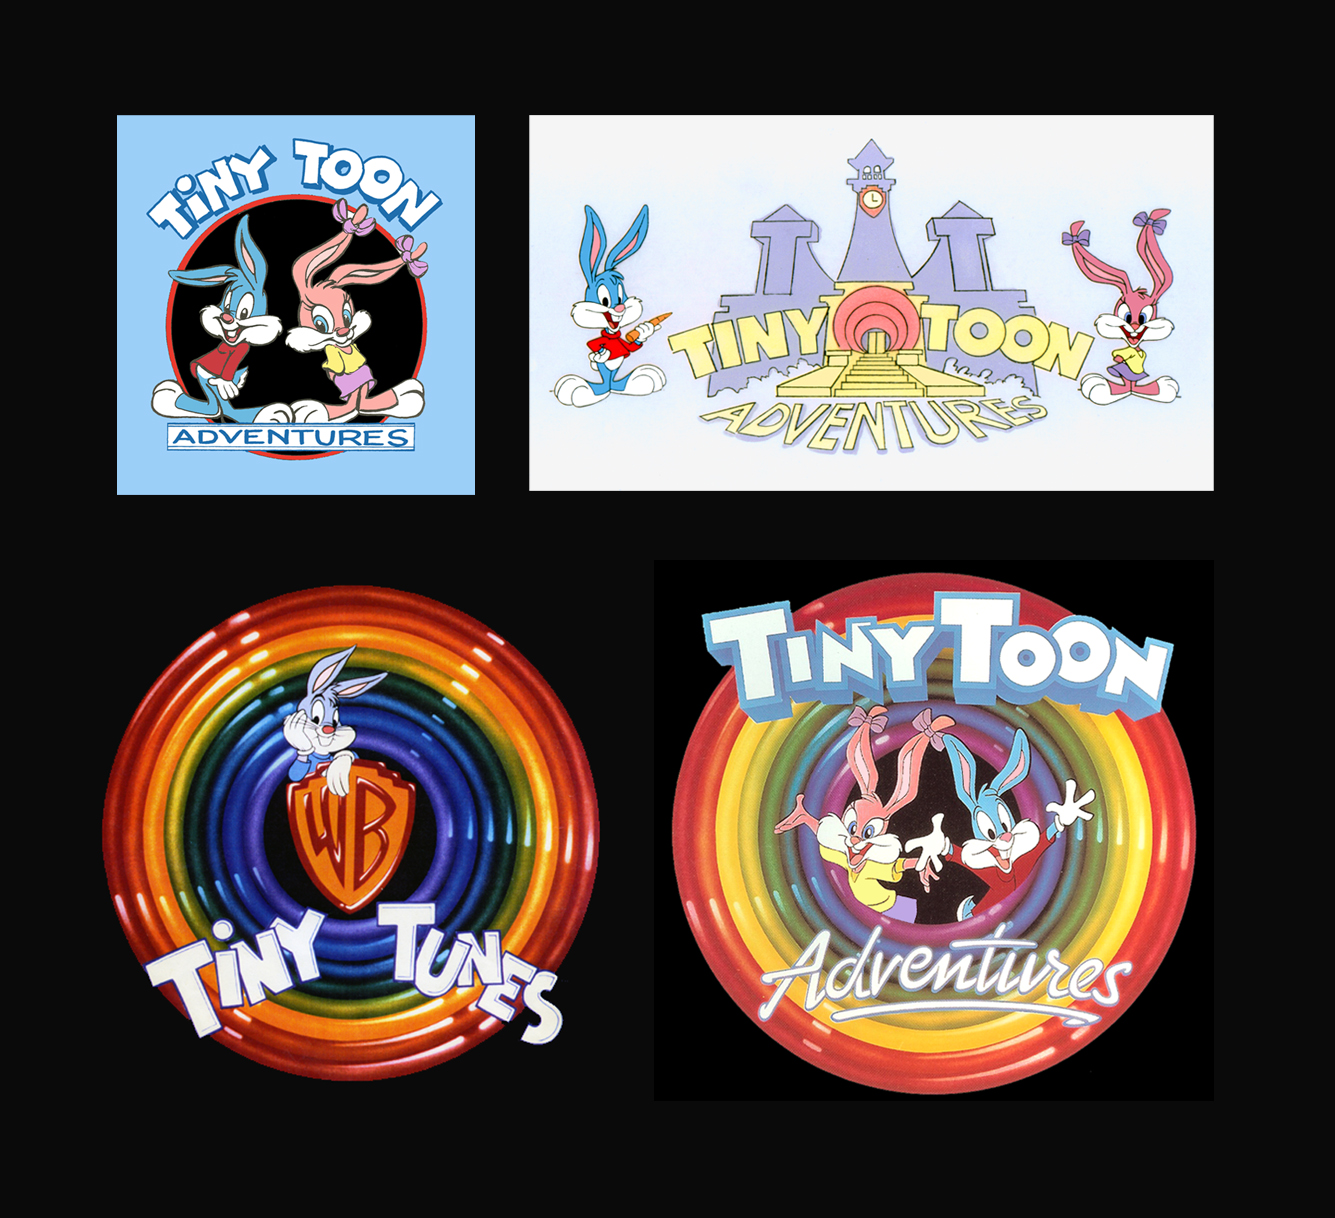 Tiny tunes. Tiny toon фигурки. Tiny toon Adventures пластилин. Tiny toon Adventures карта. Обложка на диск PS 1 tiny Toony.